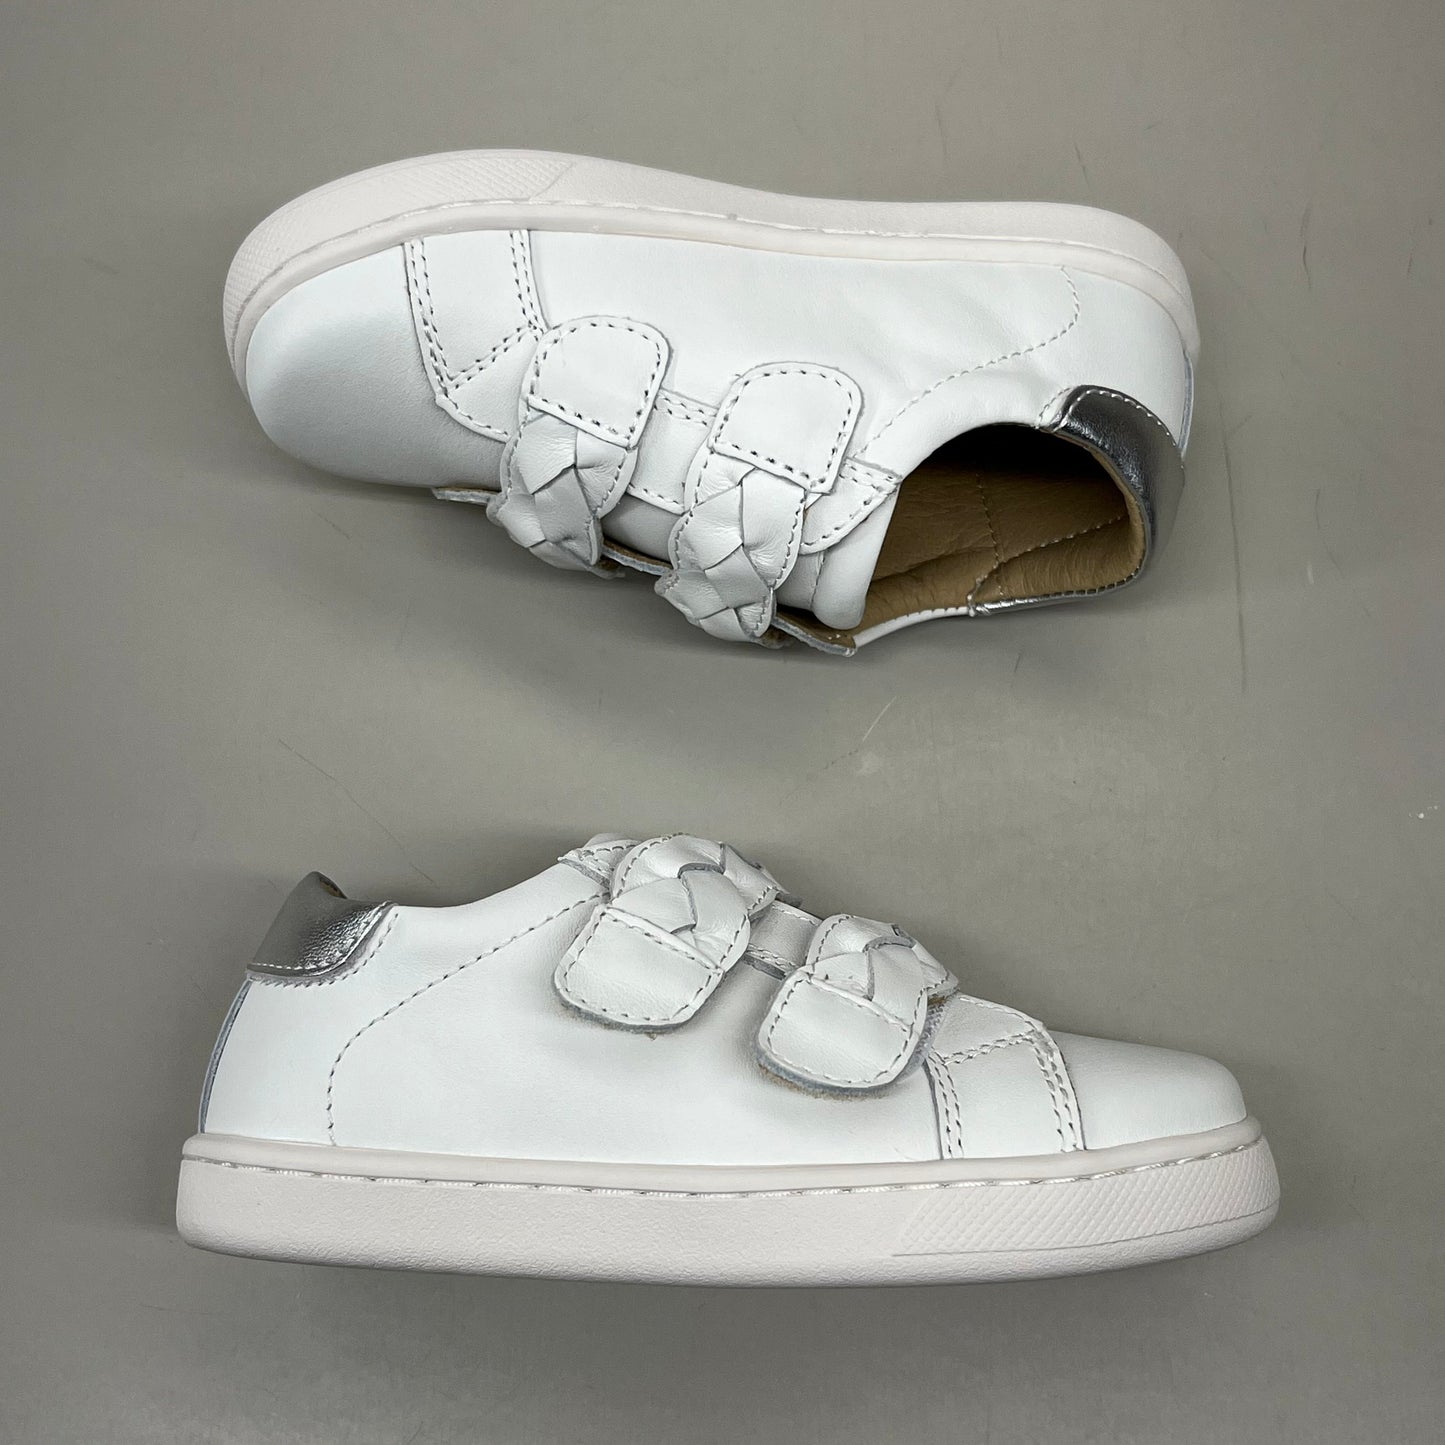 OLD SOLES Kid's Plats Leather Shoe Sz 12 EU 29 Snow / Silver #6134